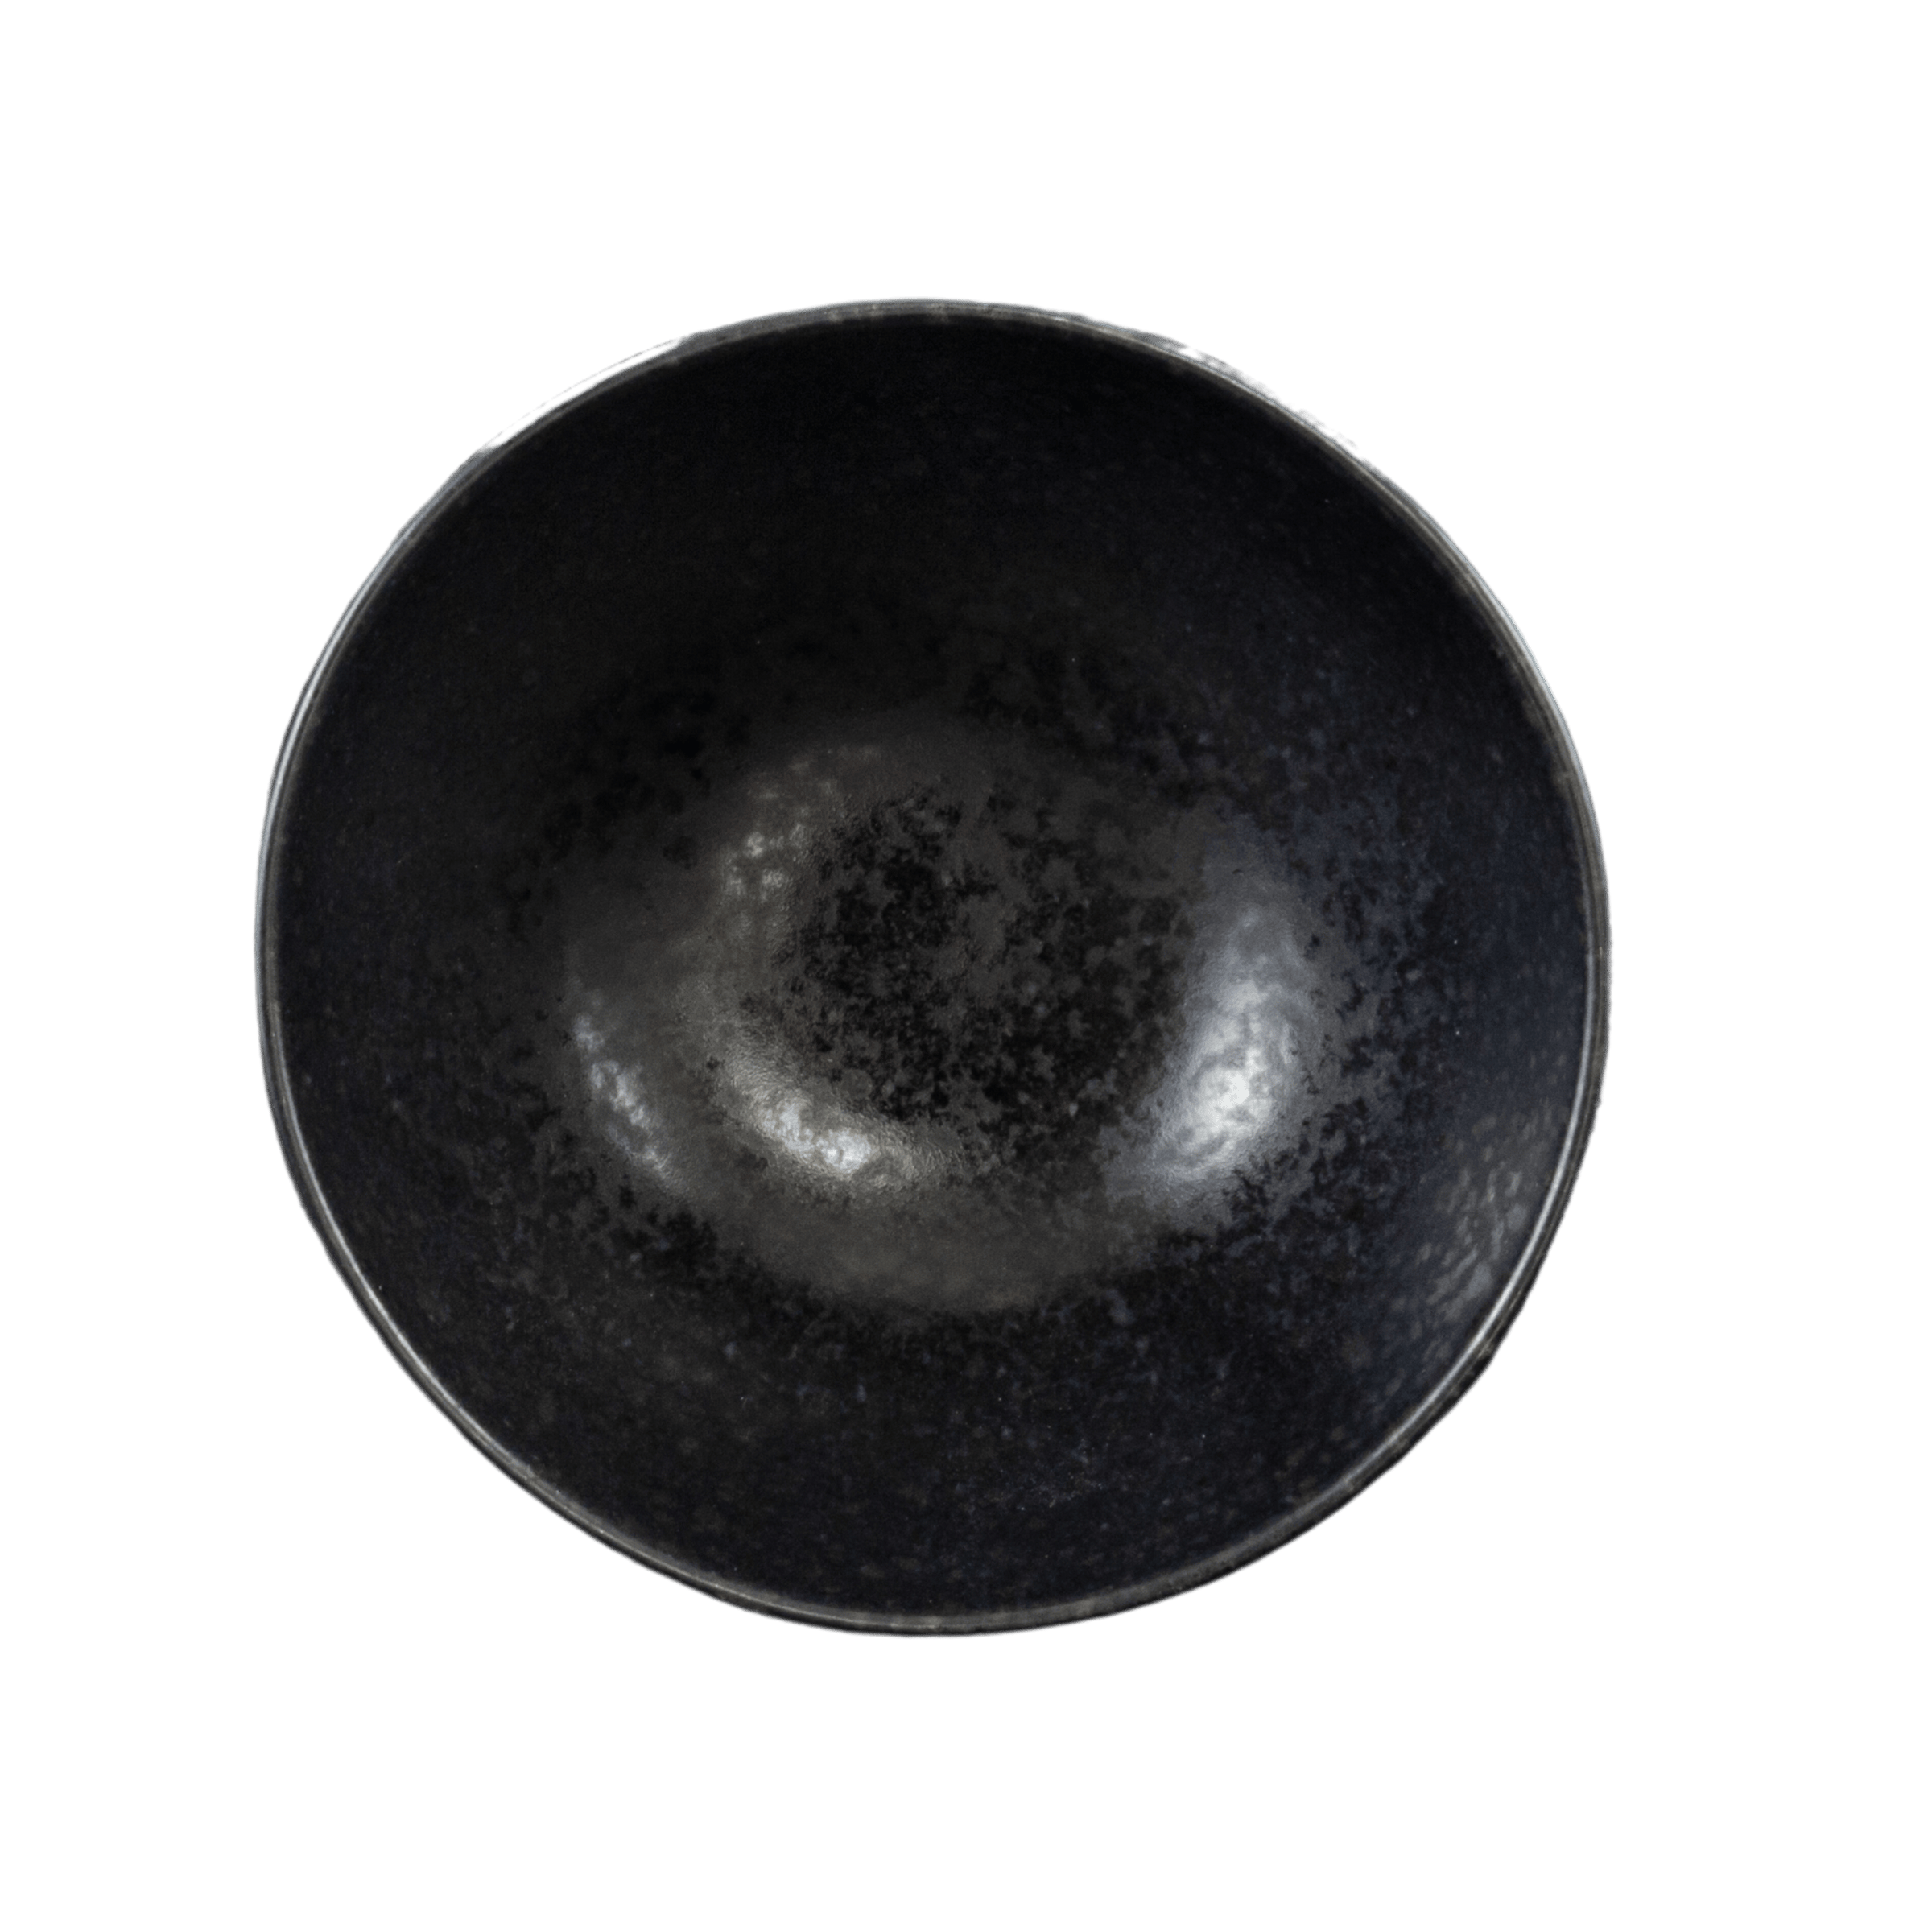 kleine schwarze schale aus keramik